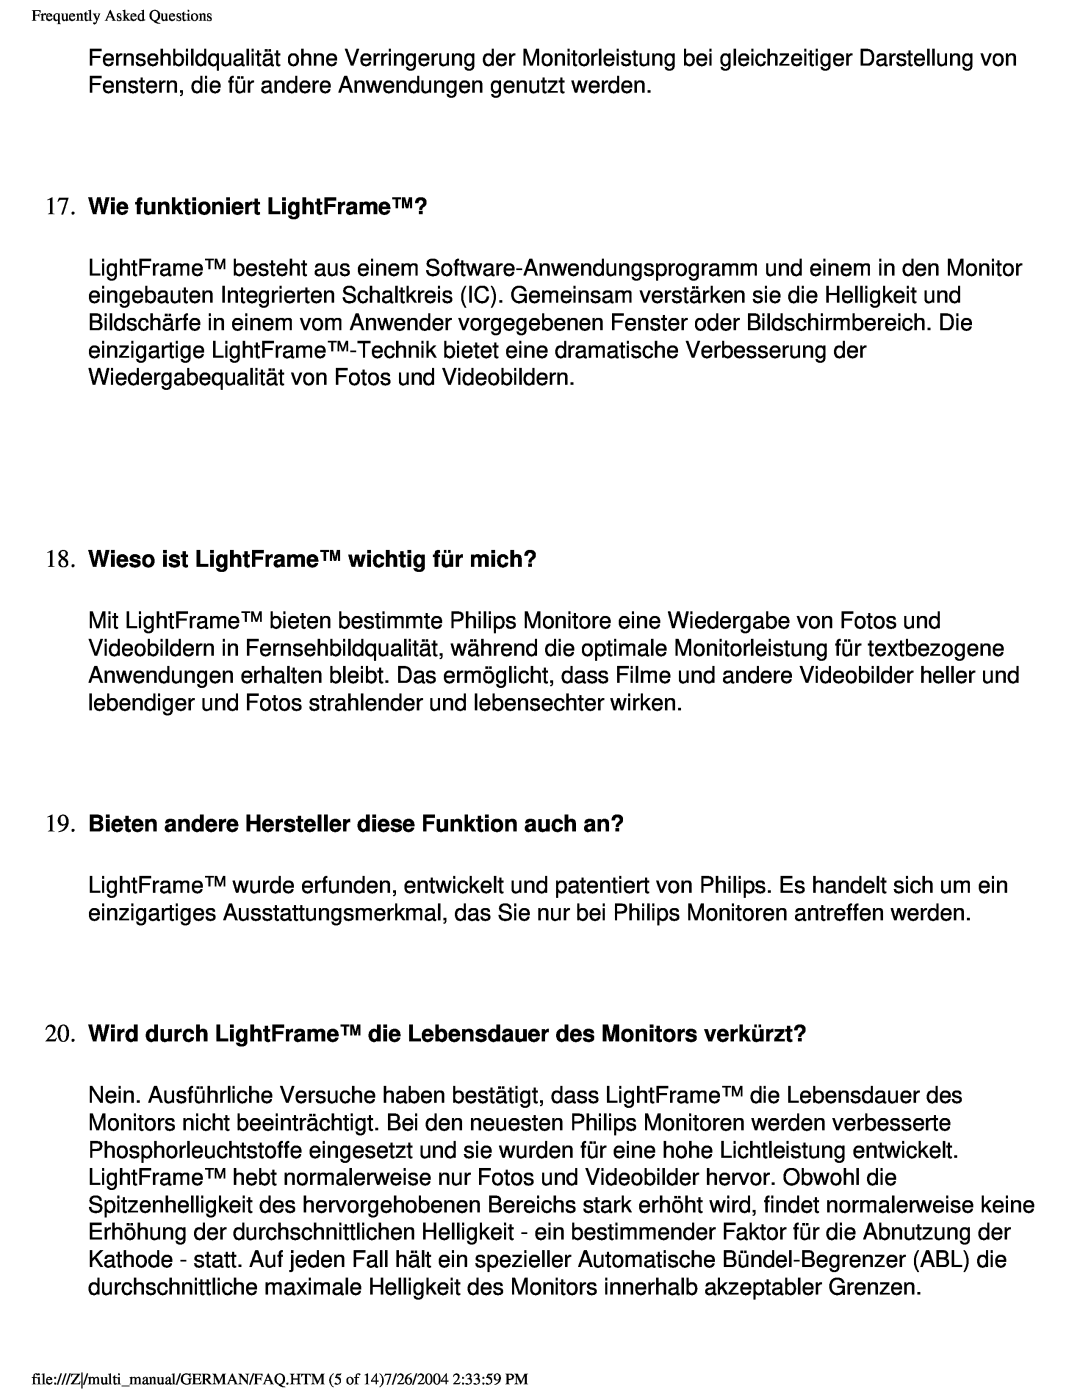 Philips 107X2 user manual Wie funktioniert LightFrame?, Wieso ist LightFrame wichtig für mich? 